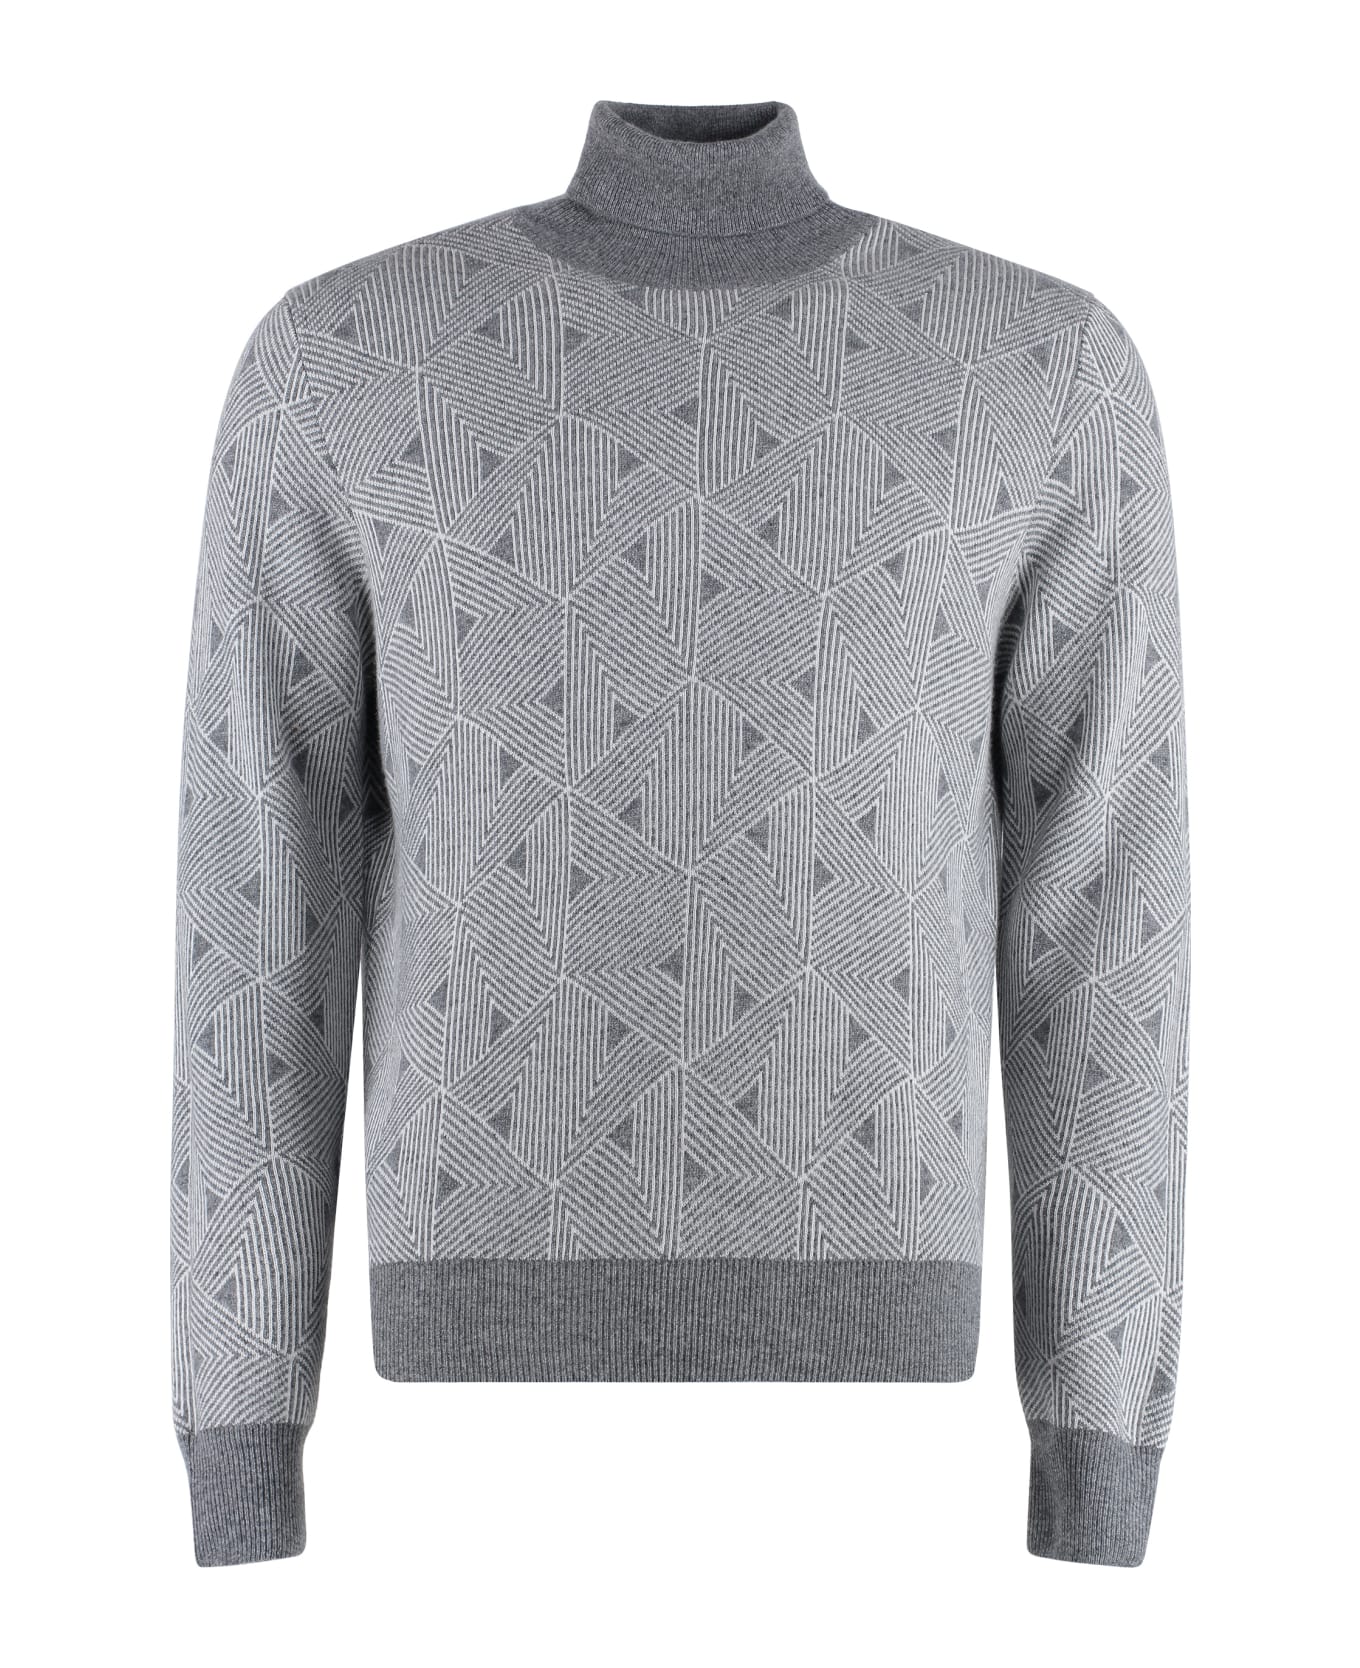 Canali Cashmere Blend Turtleneck Sweater - grey ニットウェア